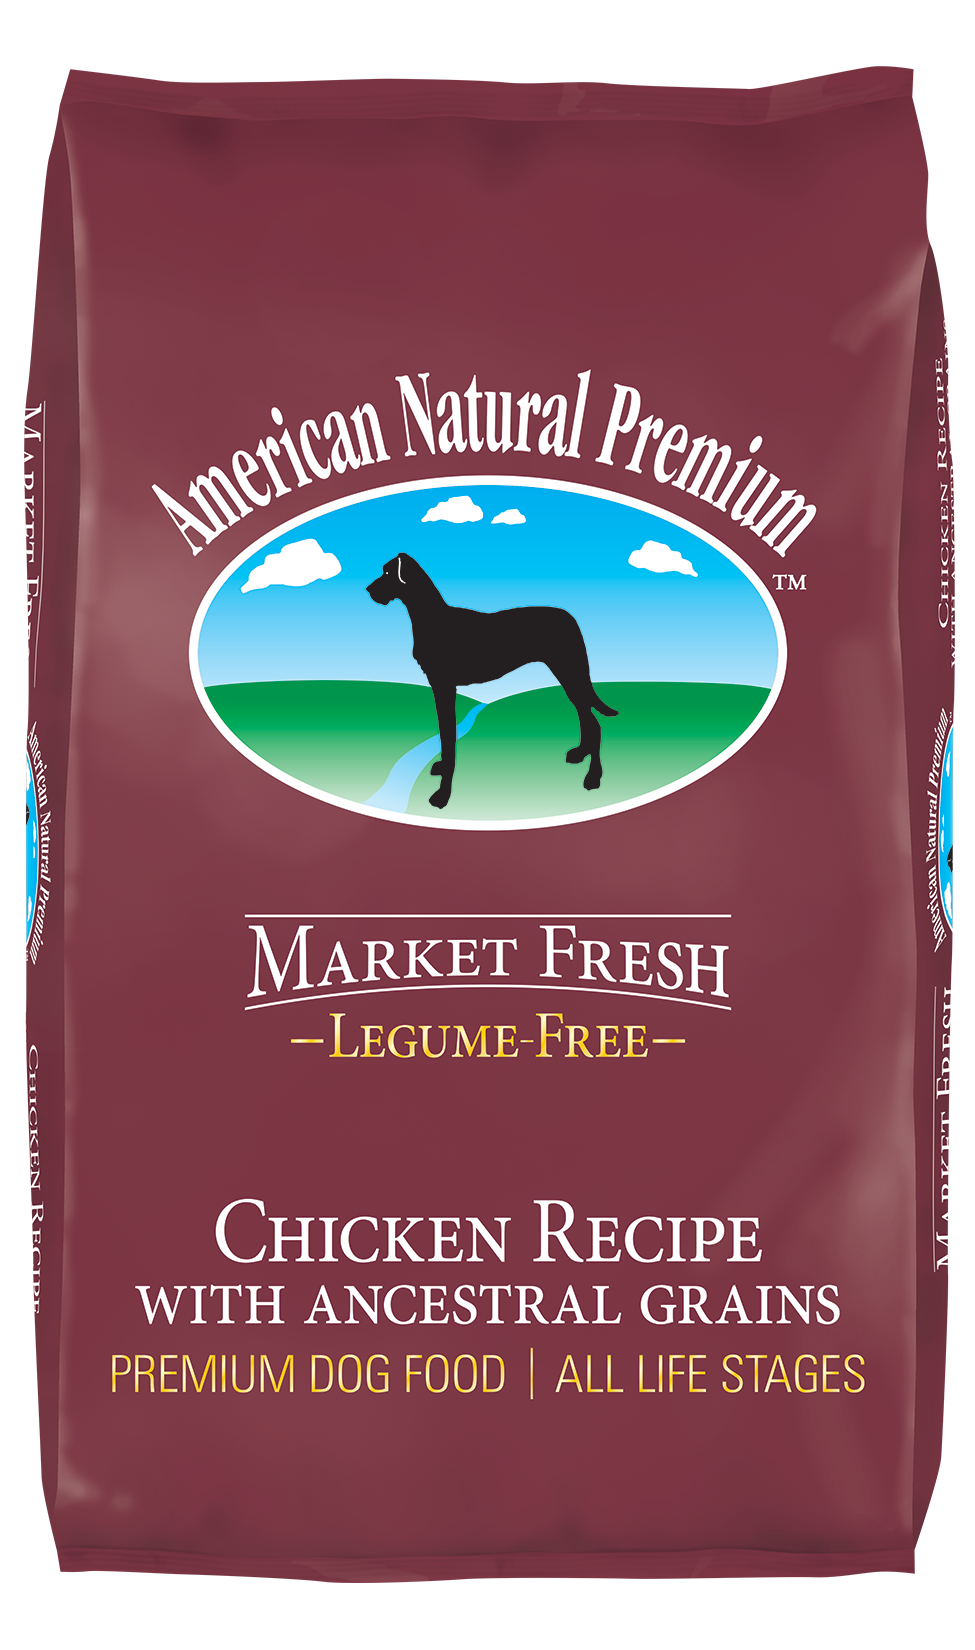 American Natural Premium - Market Fresh